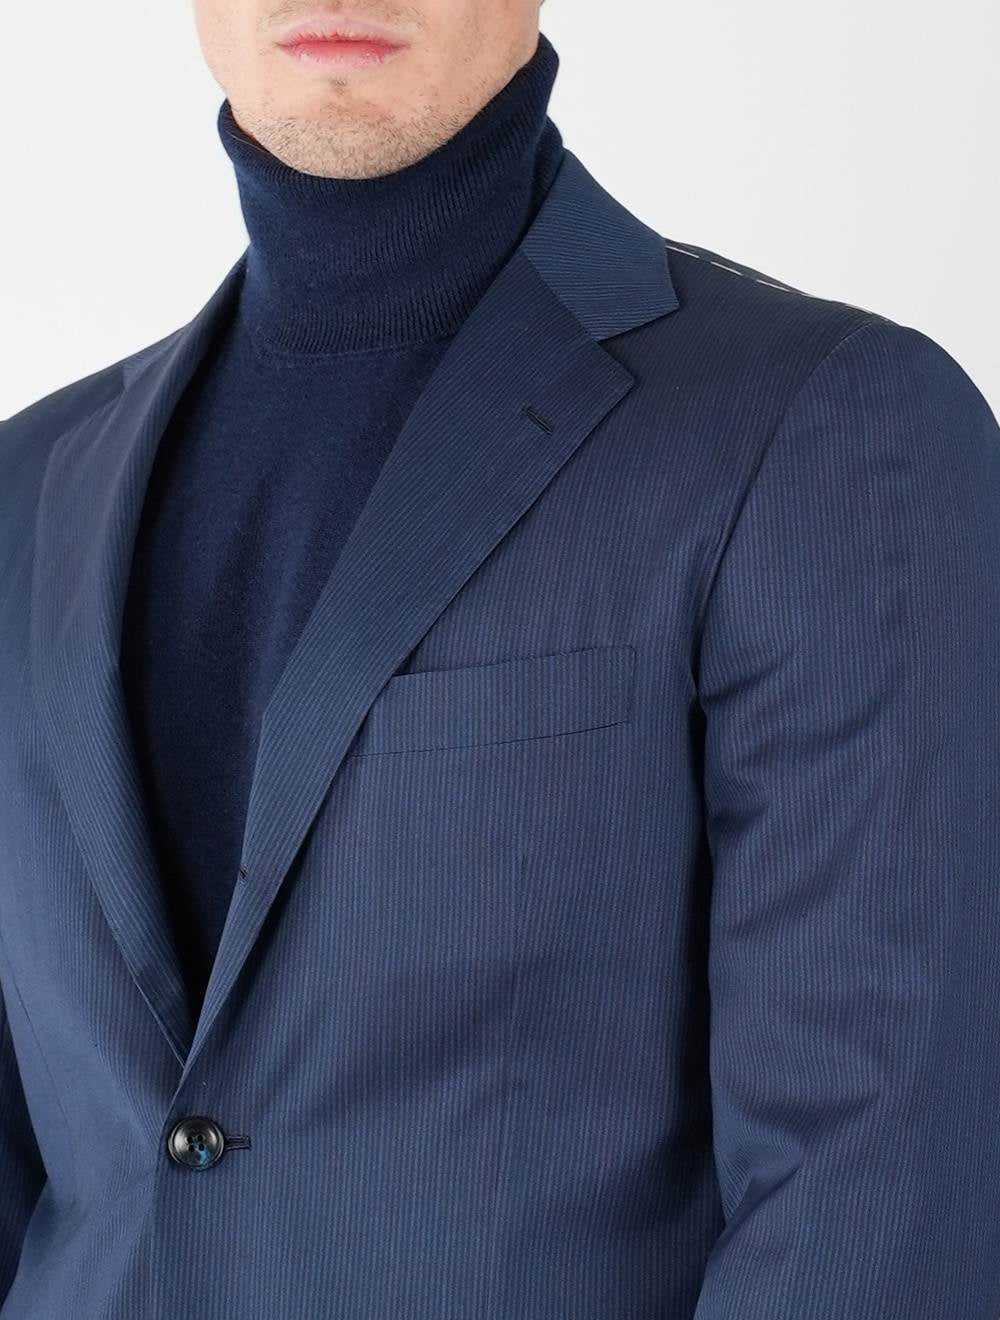 KITON Blue Wool Suit